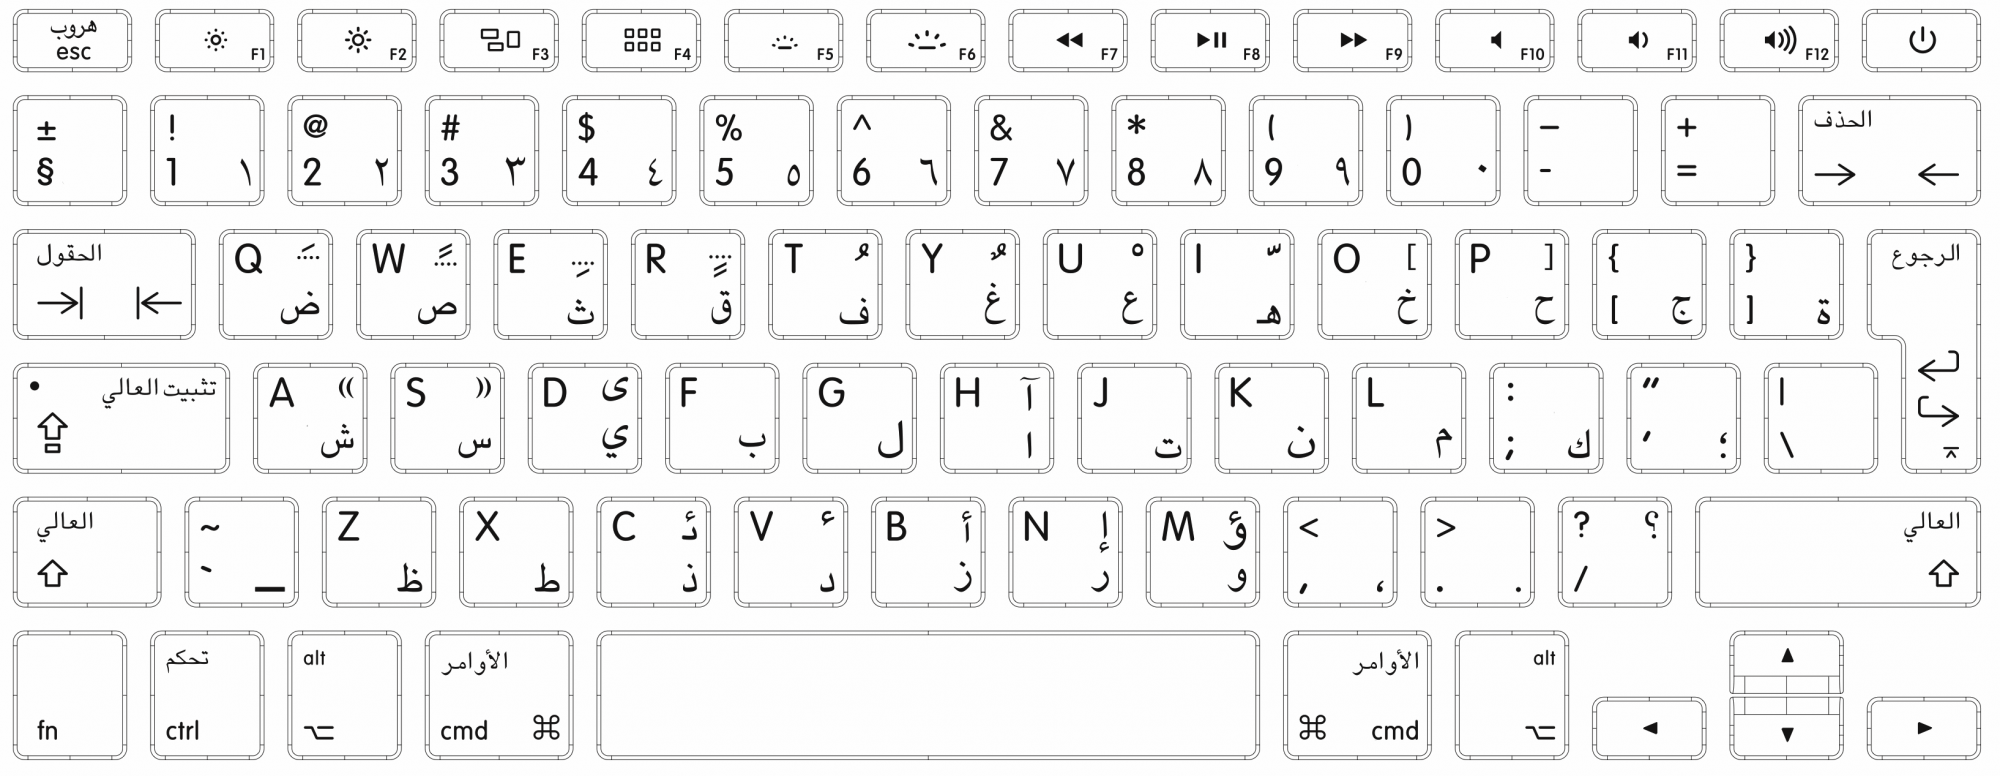 QWERTZ раскладка русско-английская. Раскладка клавиатуры Мак ОС. Арабская раскладка клавиатуры. Макбук с арабской клавиатурой.